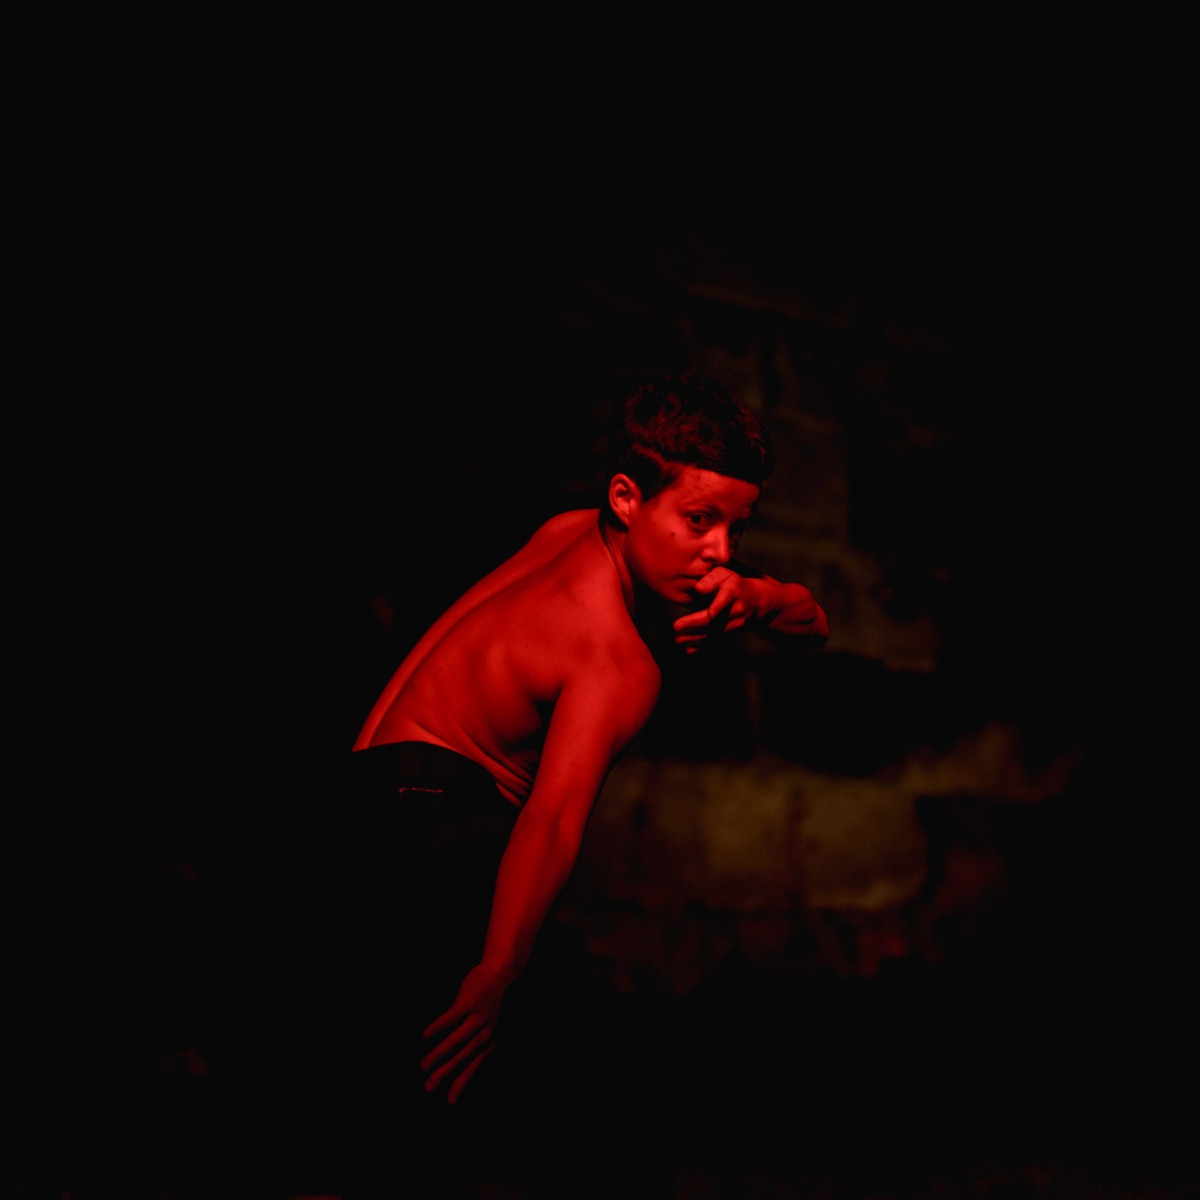 Catol Teixeira tanzt mit nacktem Oberkörper und schaut Richtung Kamera. Der ganze Raum ist in rotes Licht getaucht.